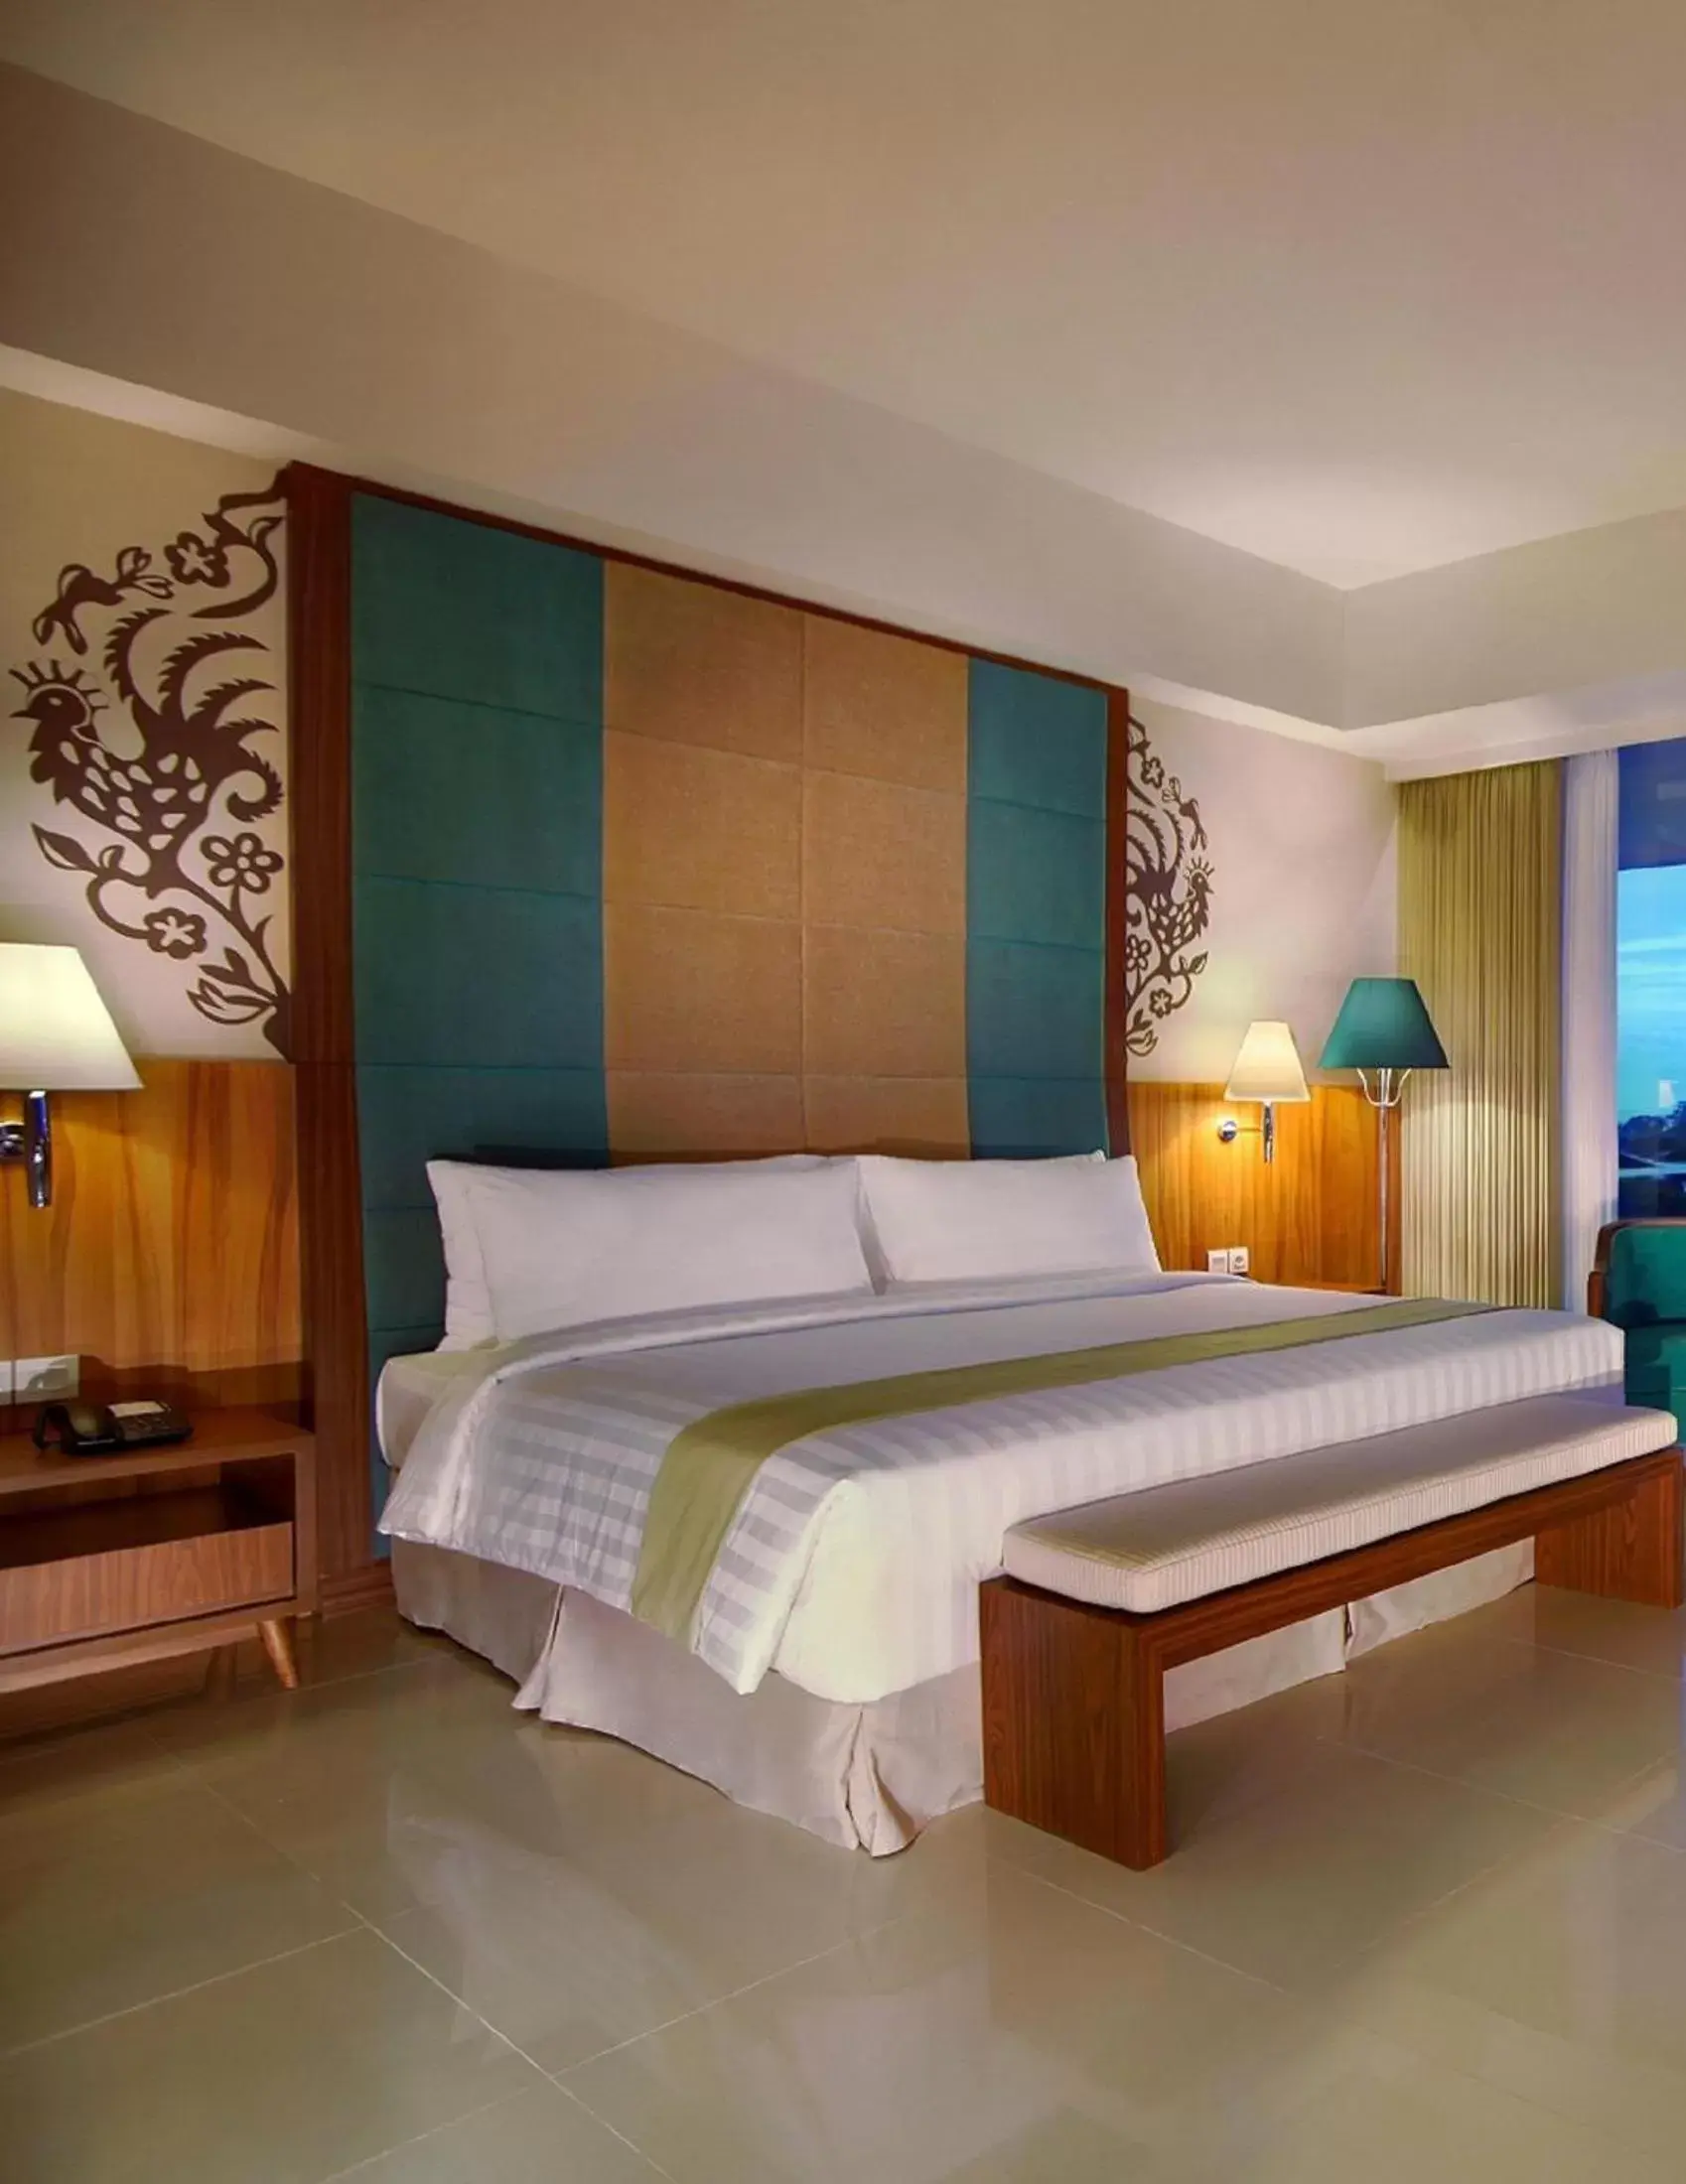 Decorative detail, Bed in ASTON Bojonegoro City Hotel